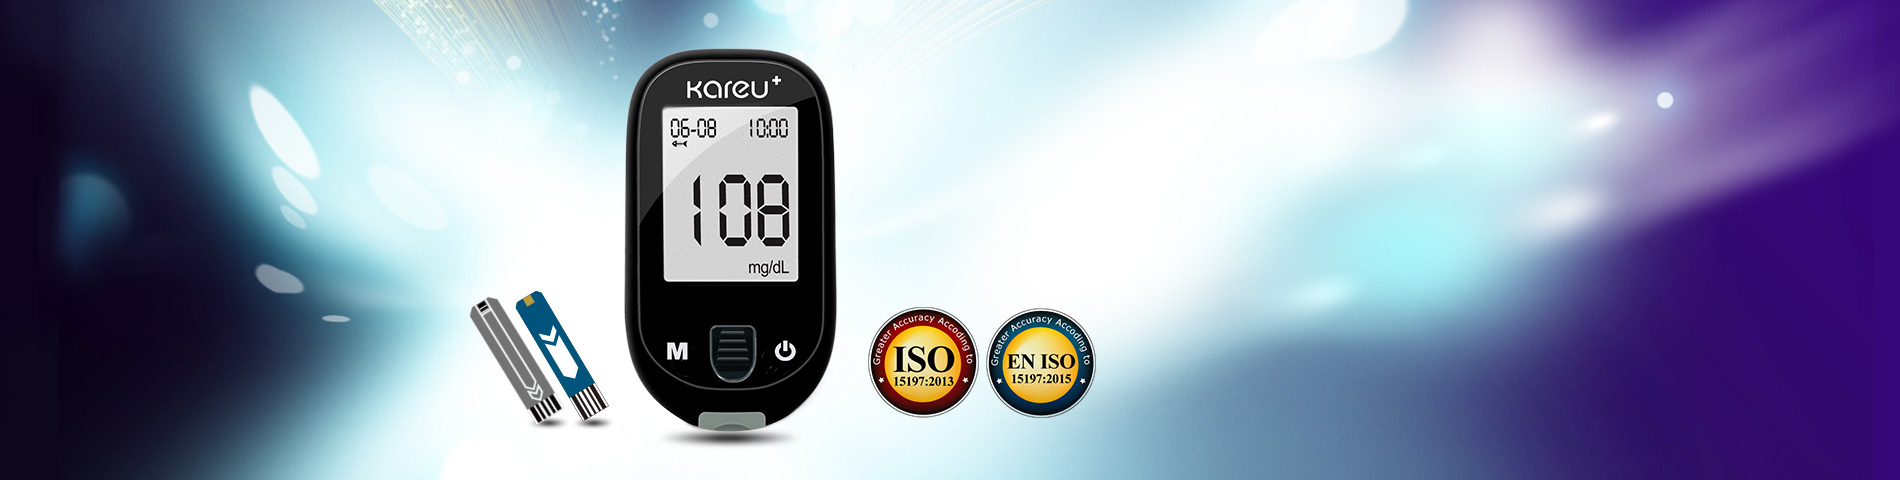 精確 快速 方便 克優加血糖監測系統 符合 ISO 13485, ISO 15197, CE